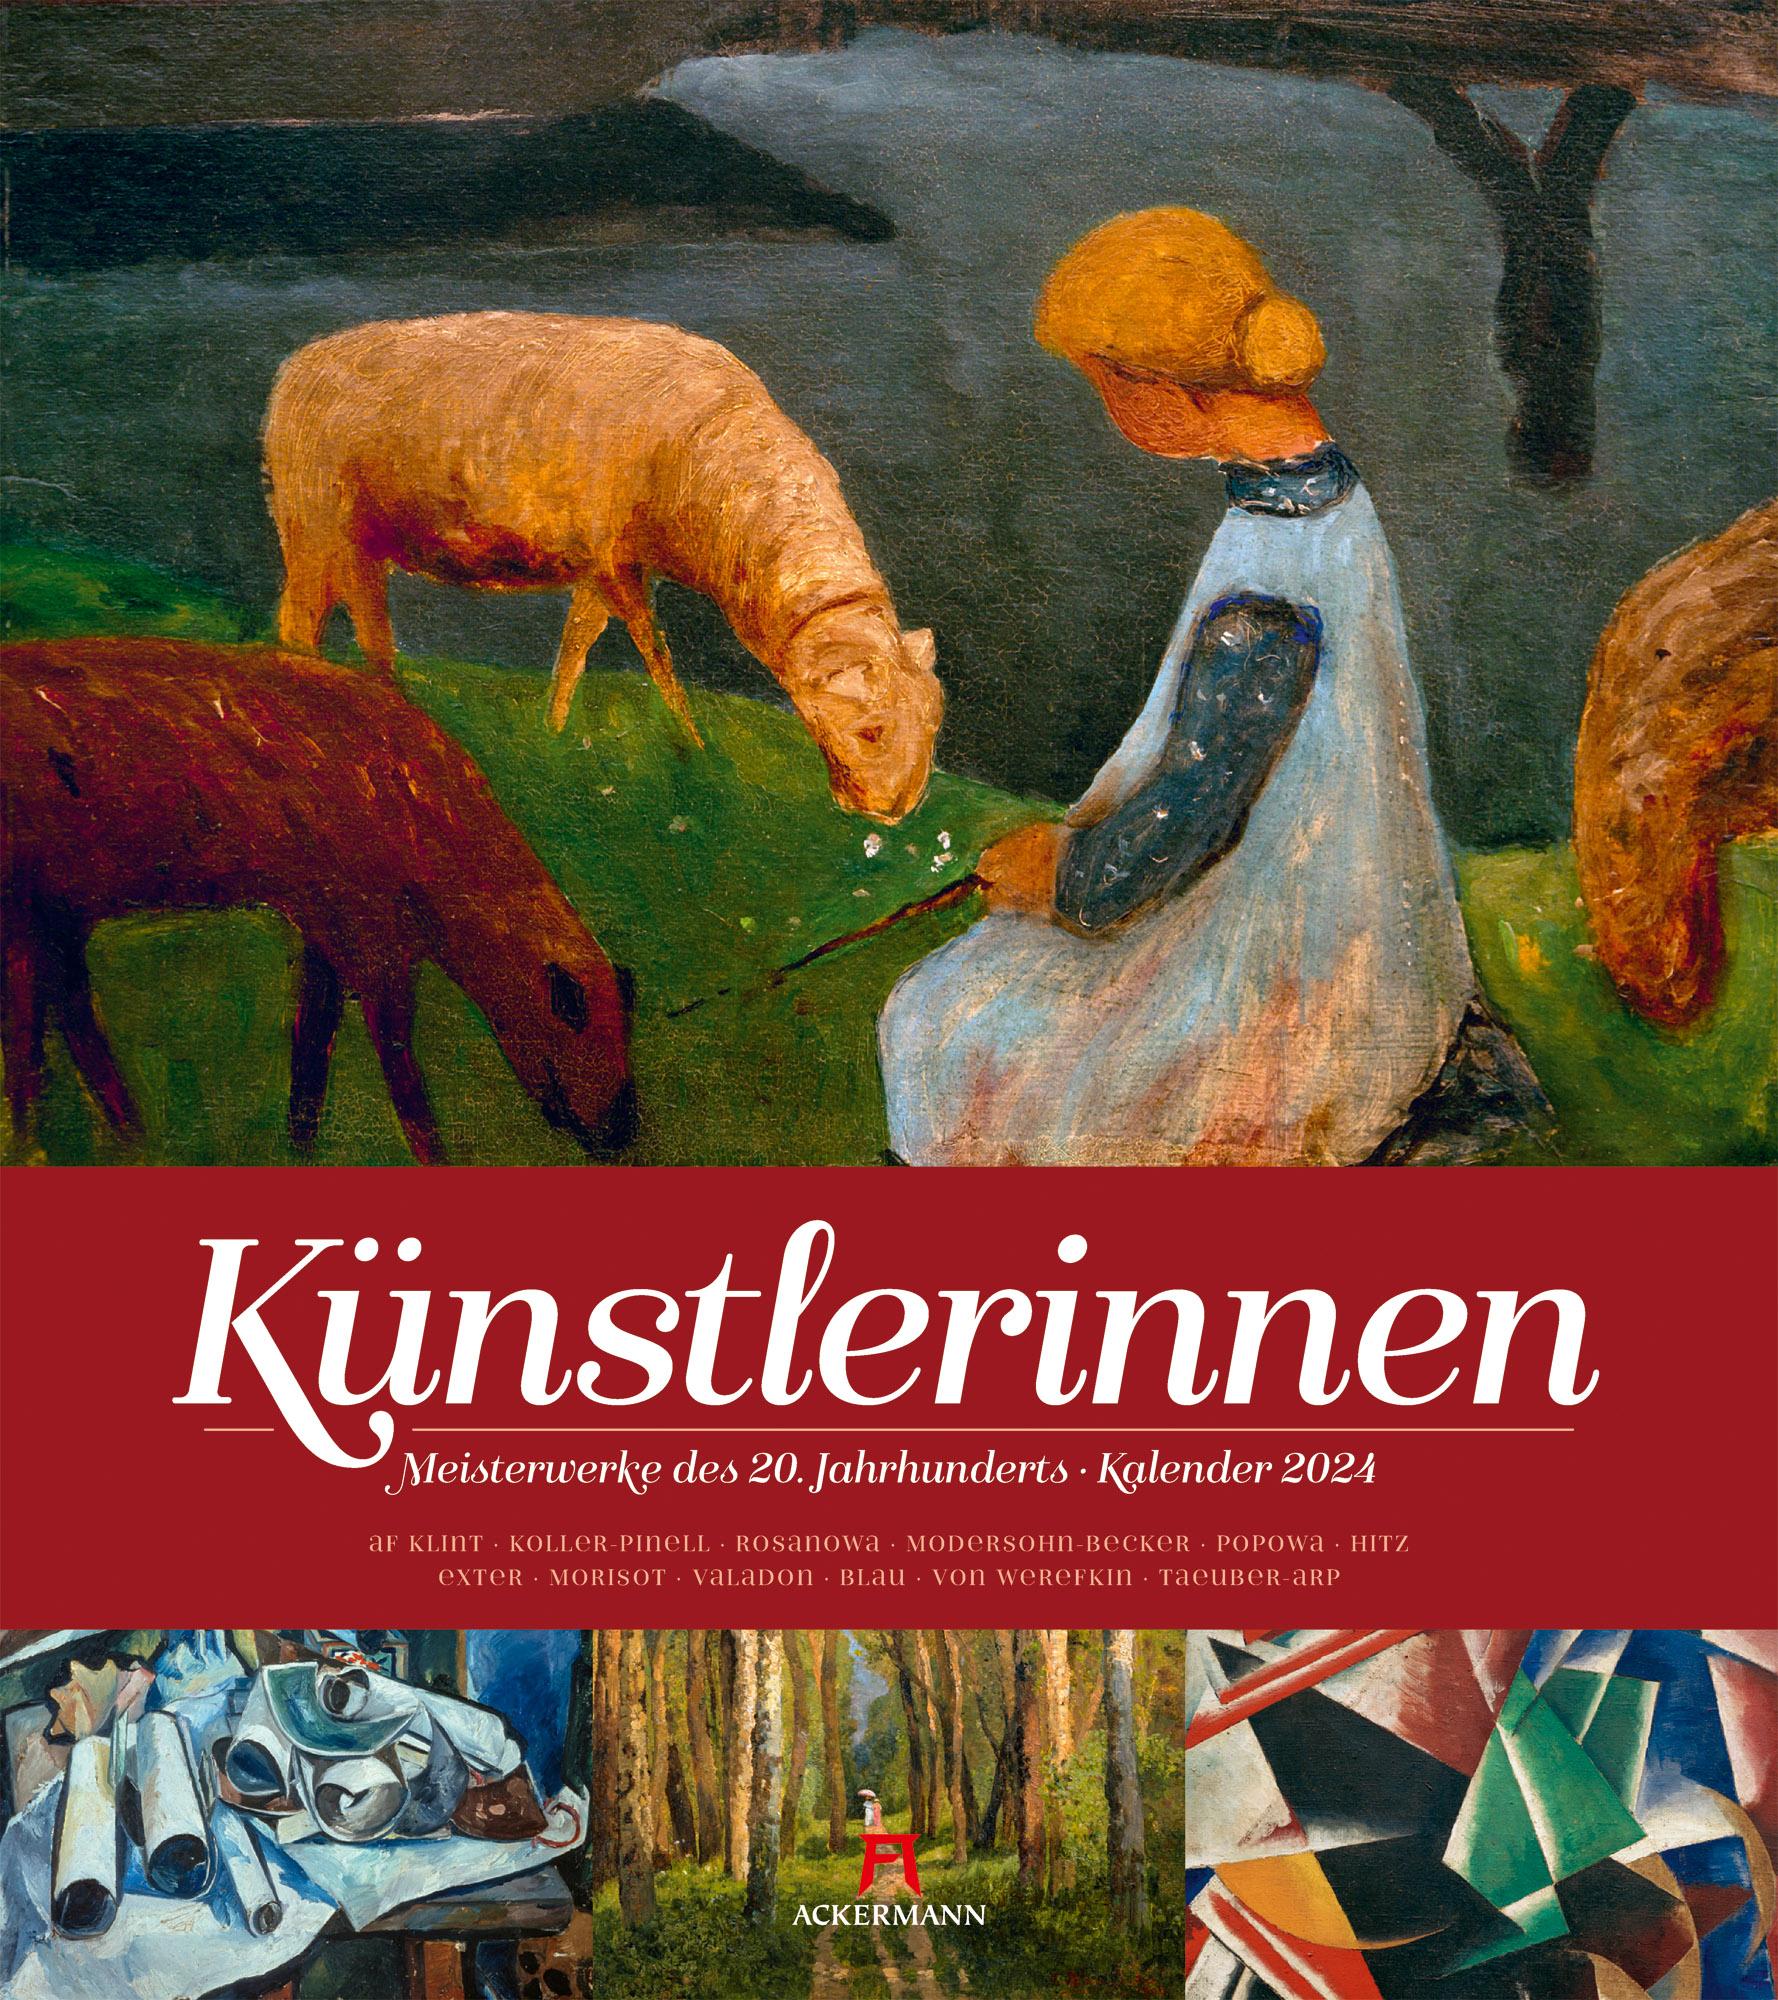 Künstlerinnen - Meisterwerke des 20. Jahrhunderts Kalender 2024 Maße (B/H): 48 x 54 cm, Kunstkalender, Dt/engl/frz